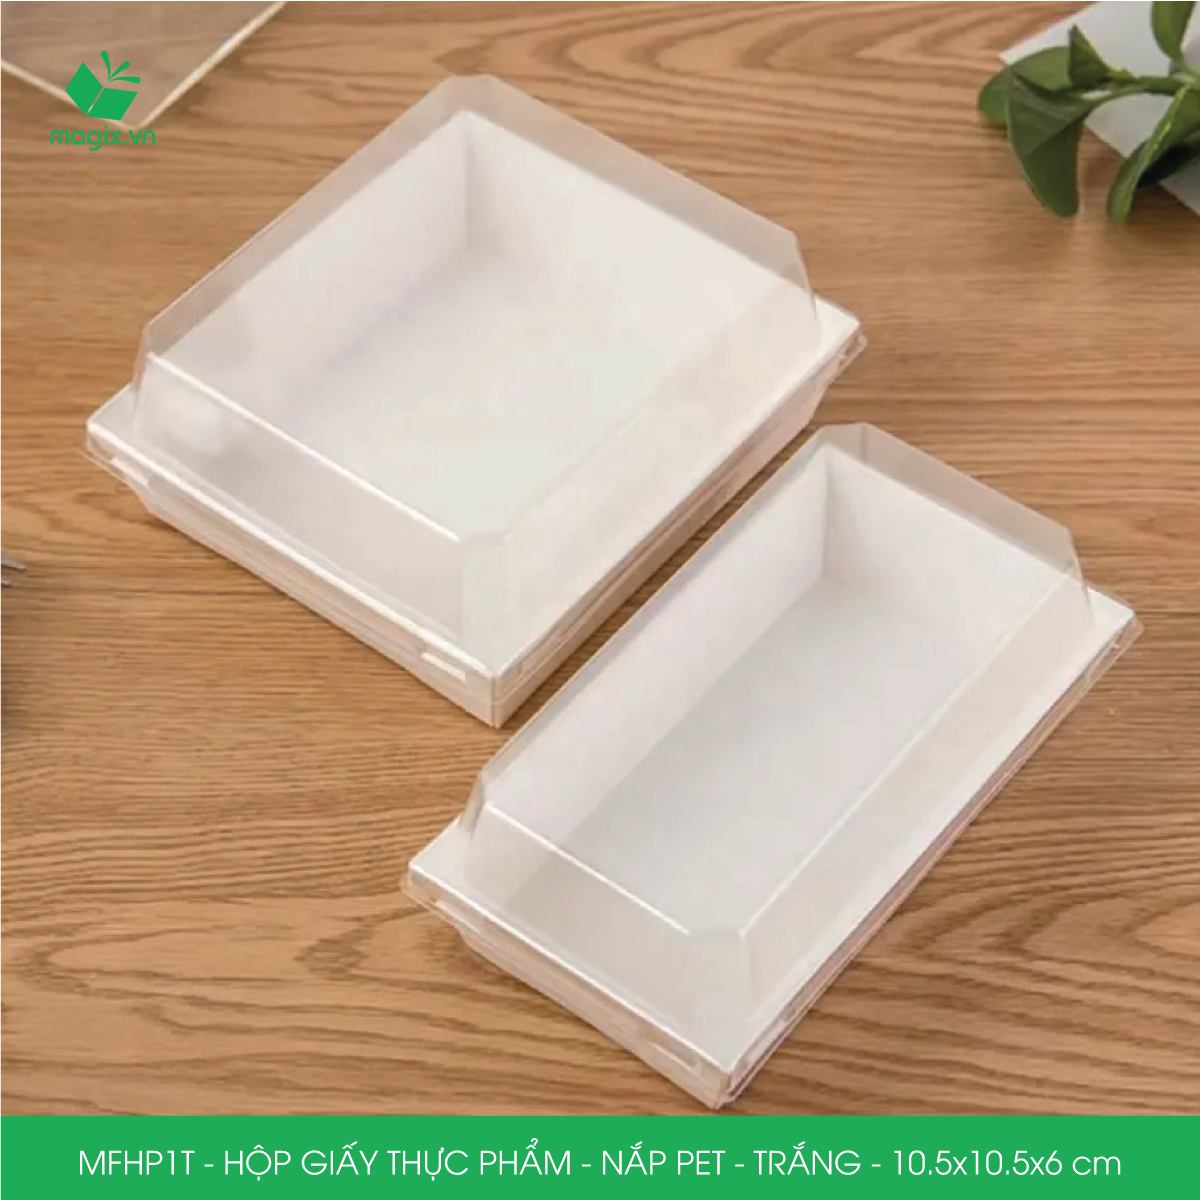 MFHP1T - 10.5x10.5x6 cm - 50 hộp giấy thực phẩm màu trắng nắp Pet, hộp giấy vuông đựng thức ăn, hộp bánh nắp trong